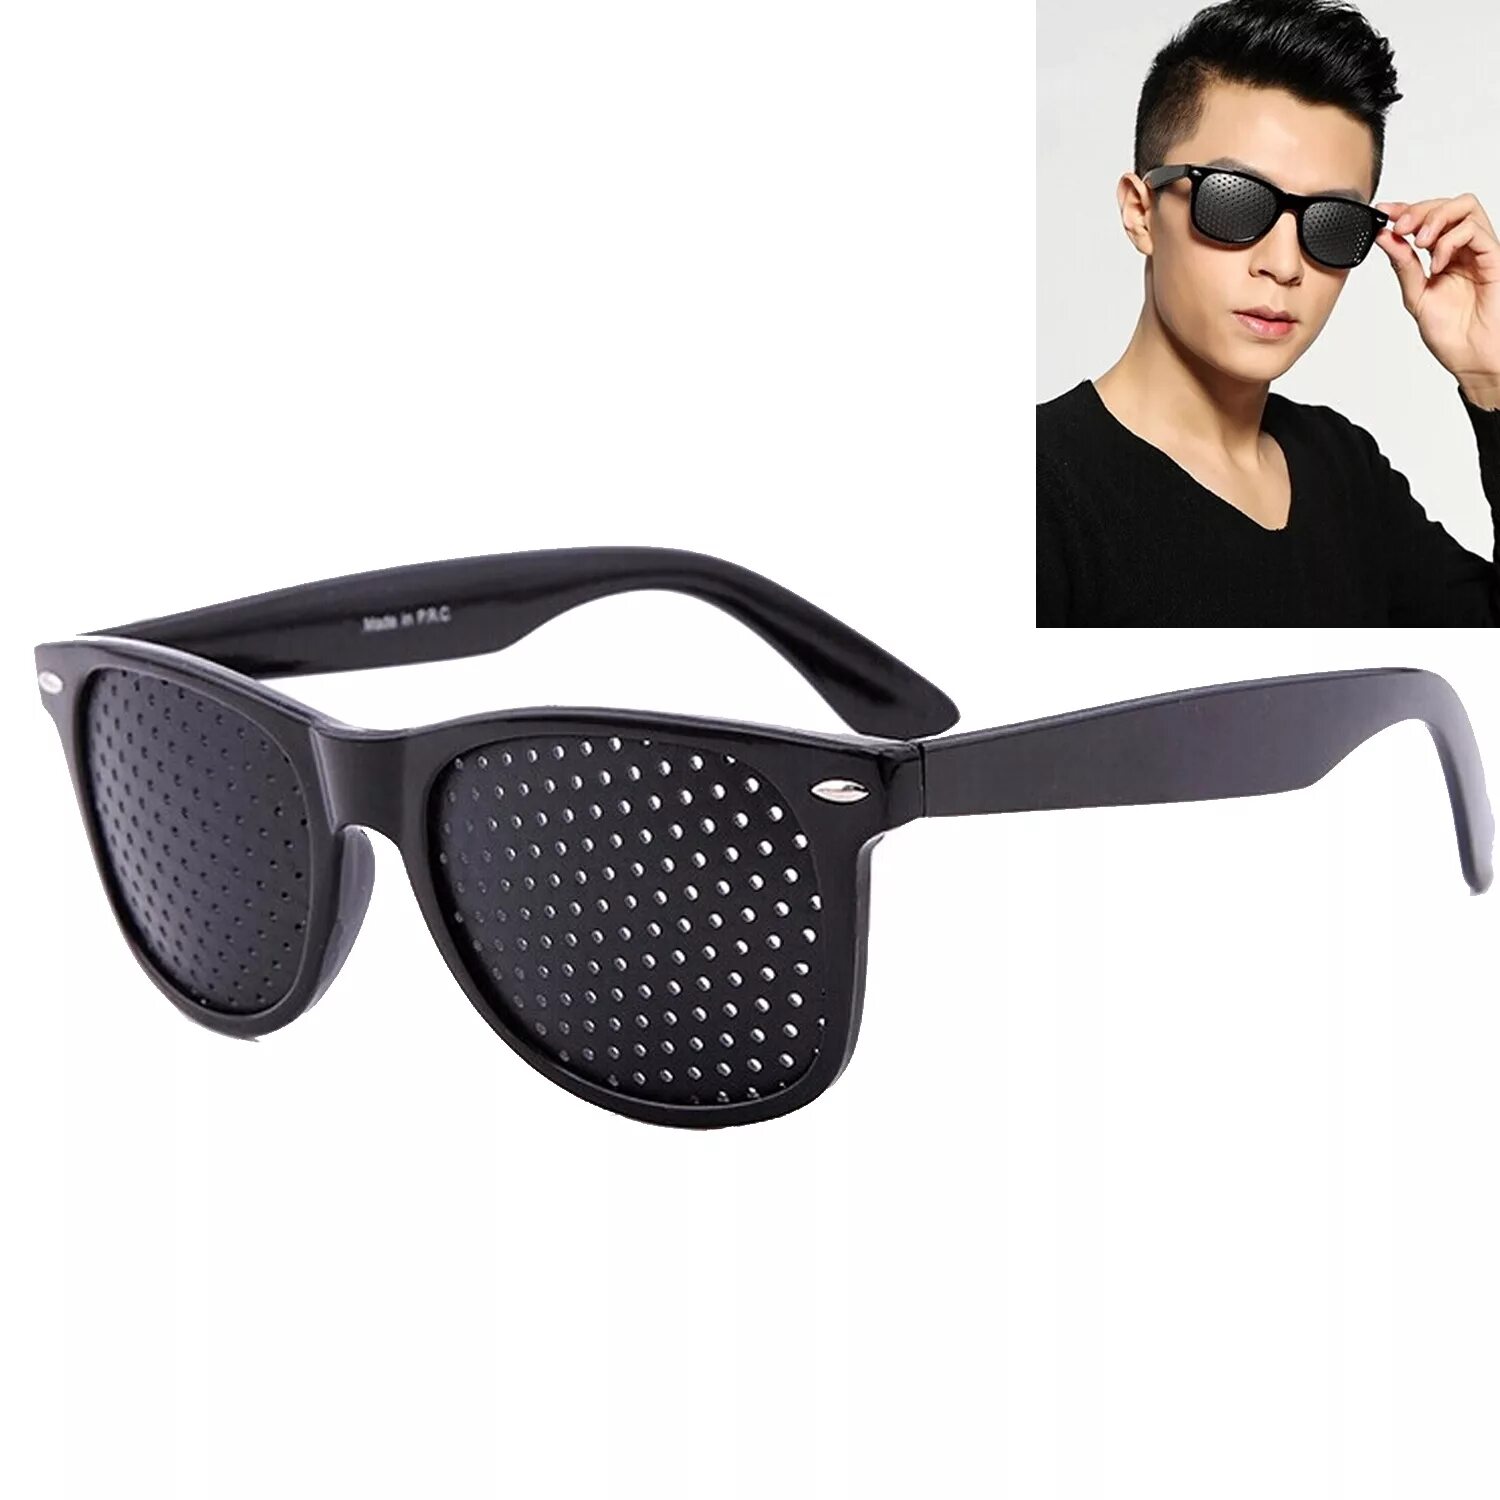 Очки для просмотра телевизора. Mr 8858 c1 очки. Очки солнцезащитные Fendi occhiali. Pinhole очки. Очки с отверстиями.